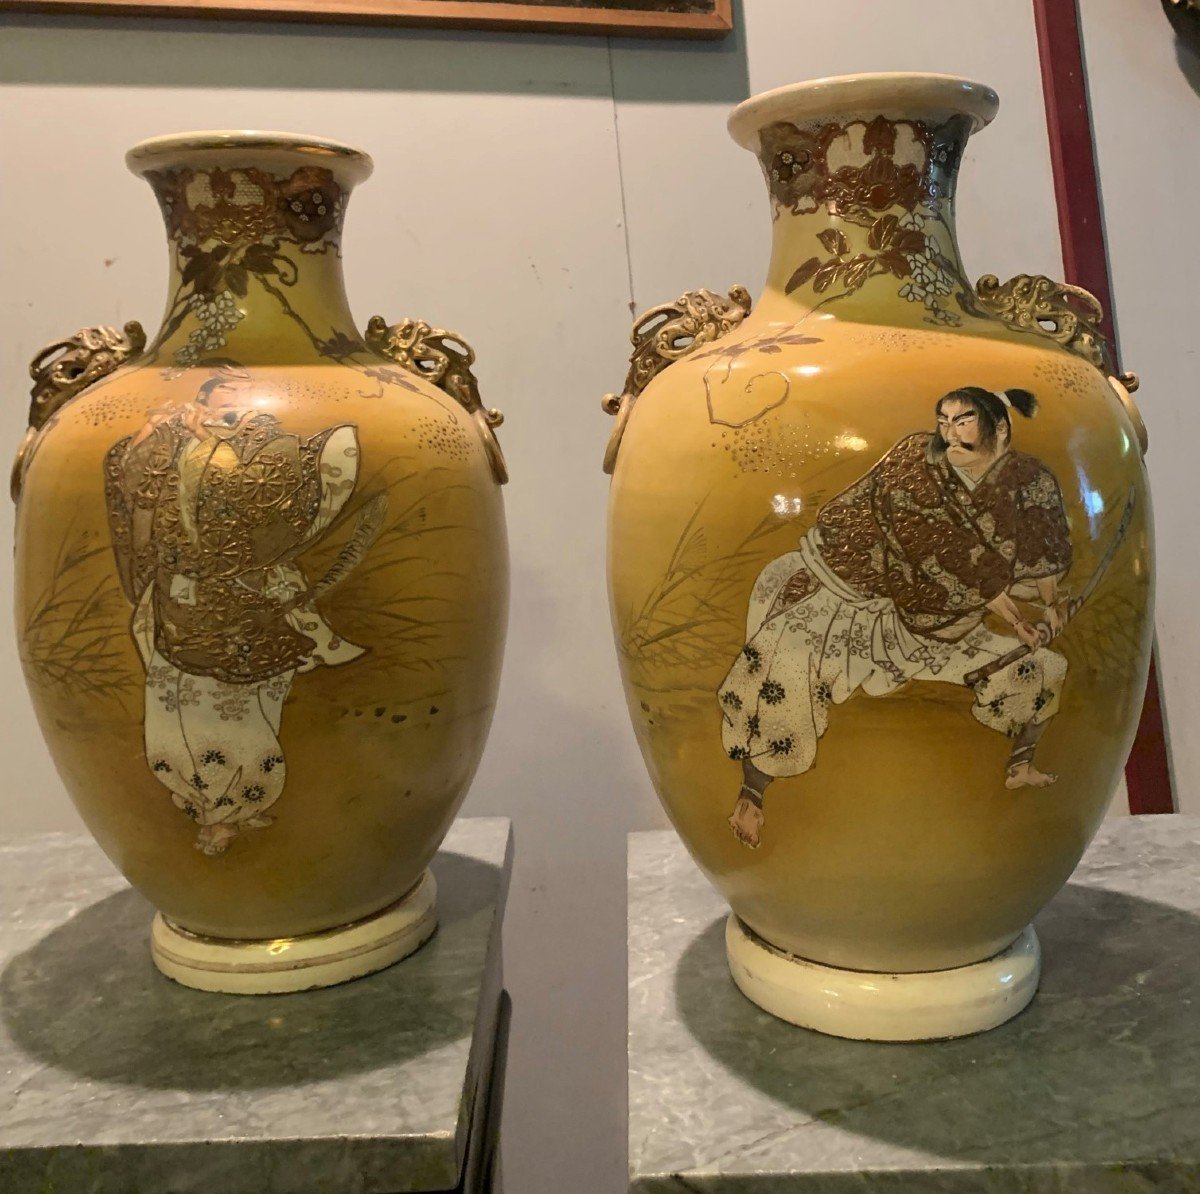 Grands Vases Japonais Avec Acteurs. Japon. ère Meiji. Fin 19e - Début 20e Siècle. 